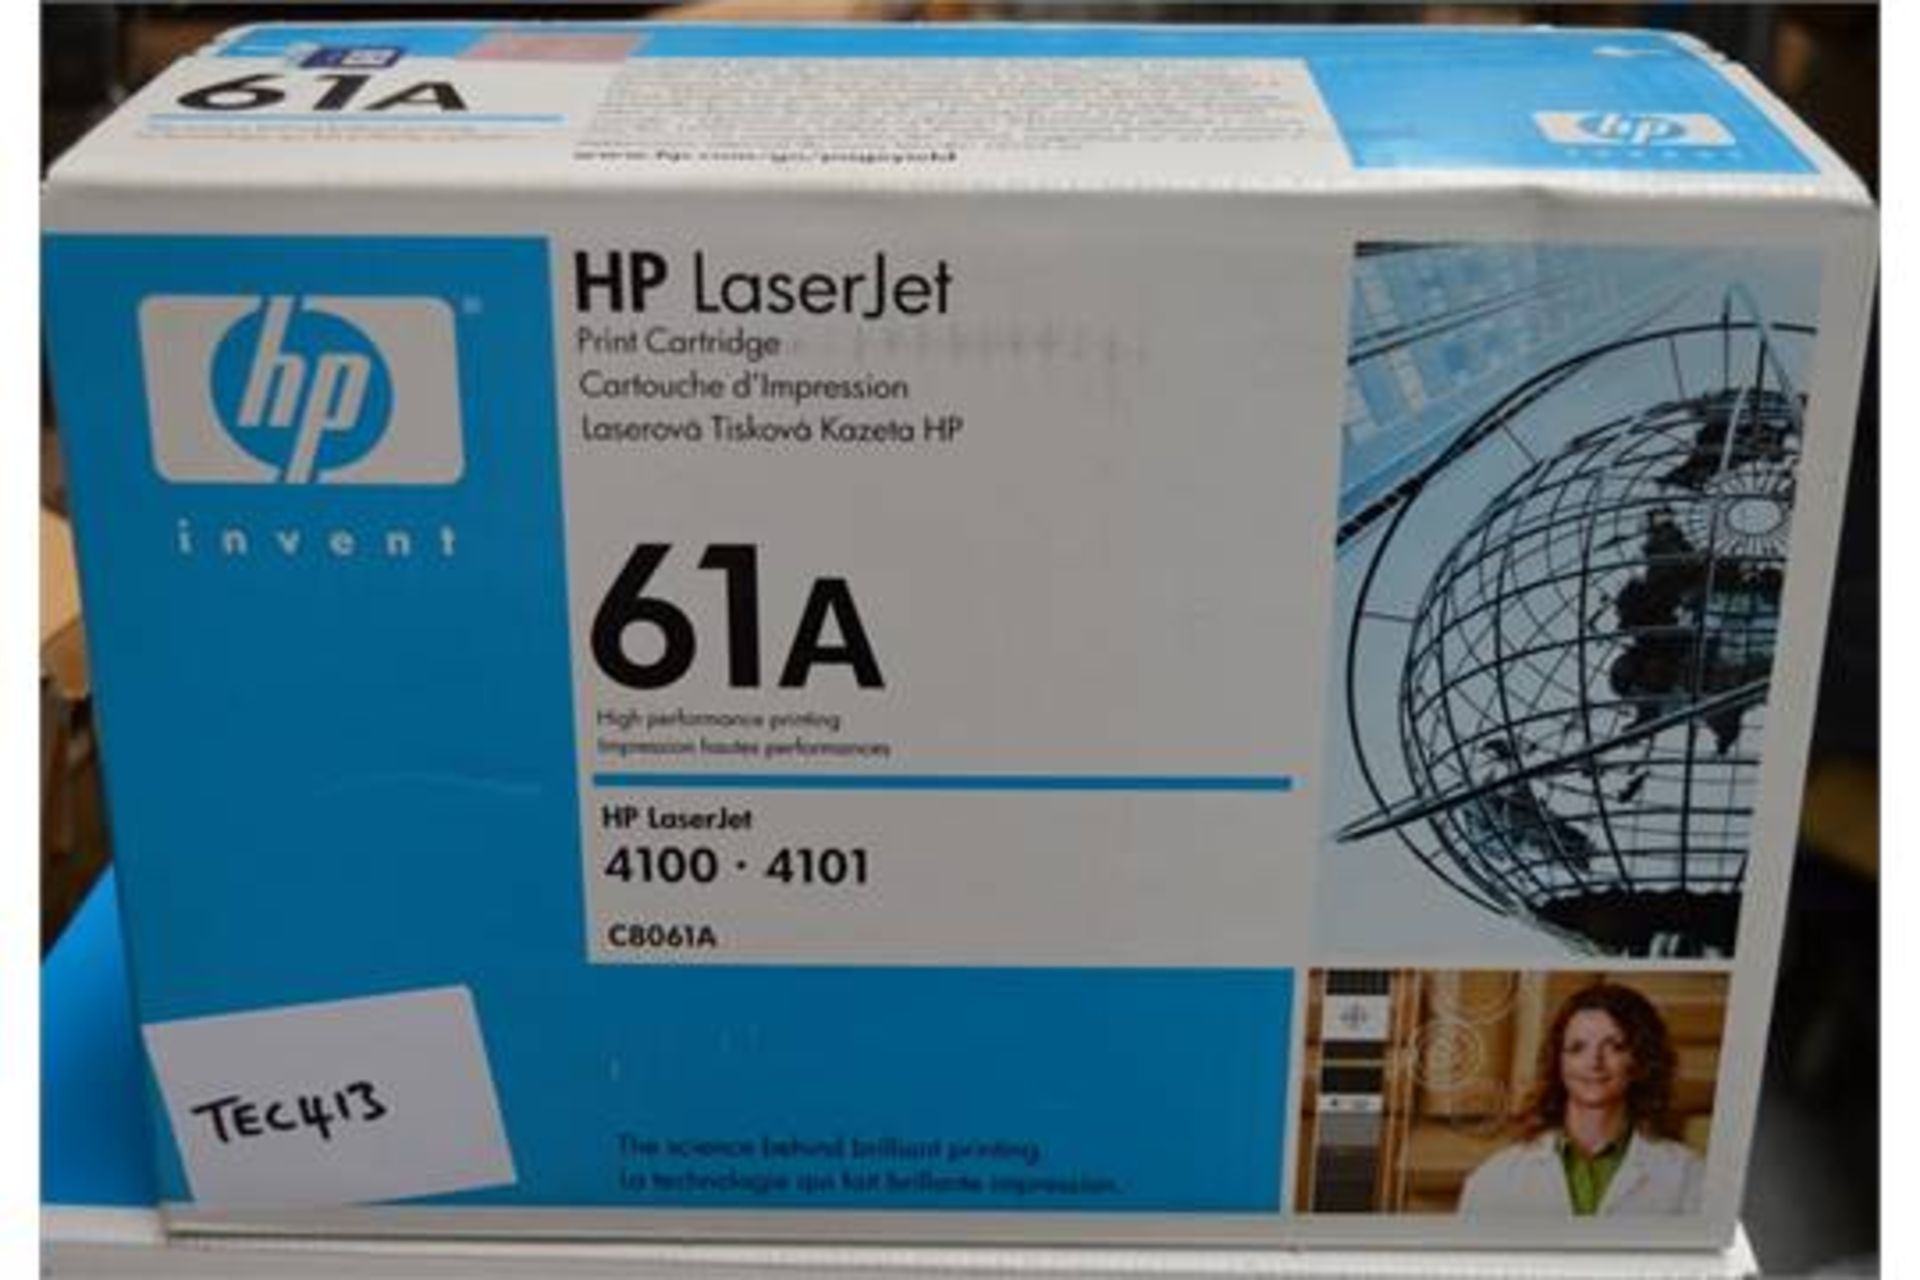 1 x HP 61A Original Nlack Toner Cartridge - For HP Laserjet 4100 / 4101 Printers - Genuine Boxed